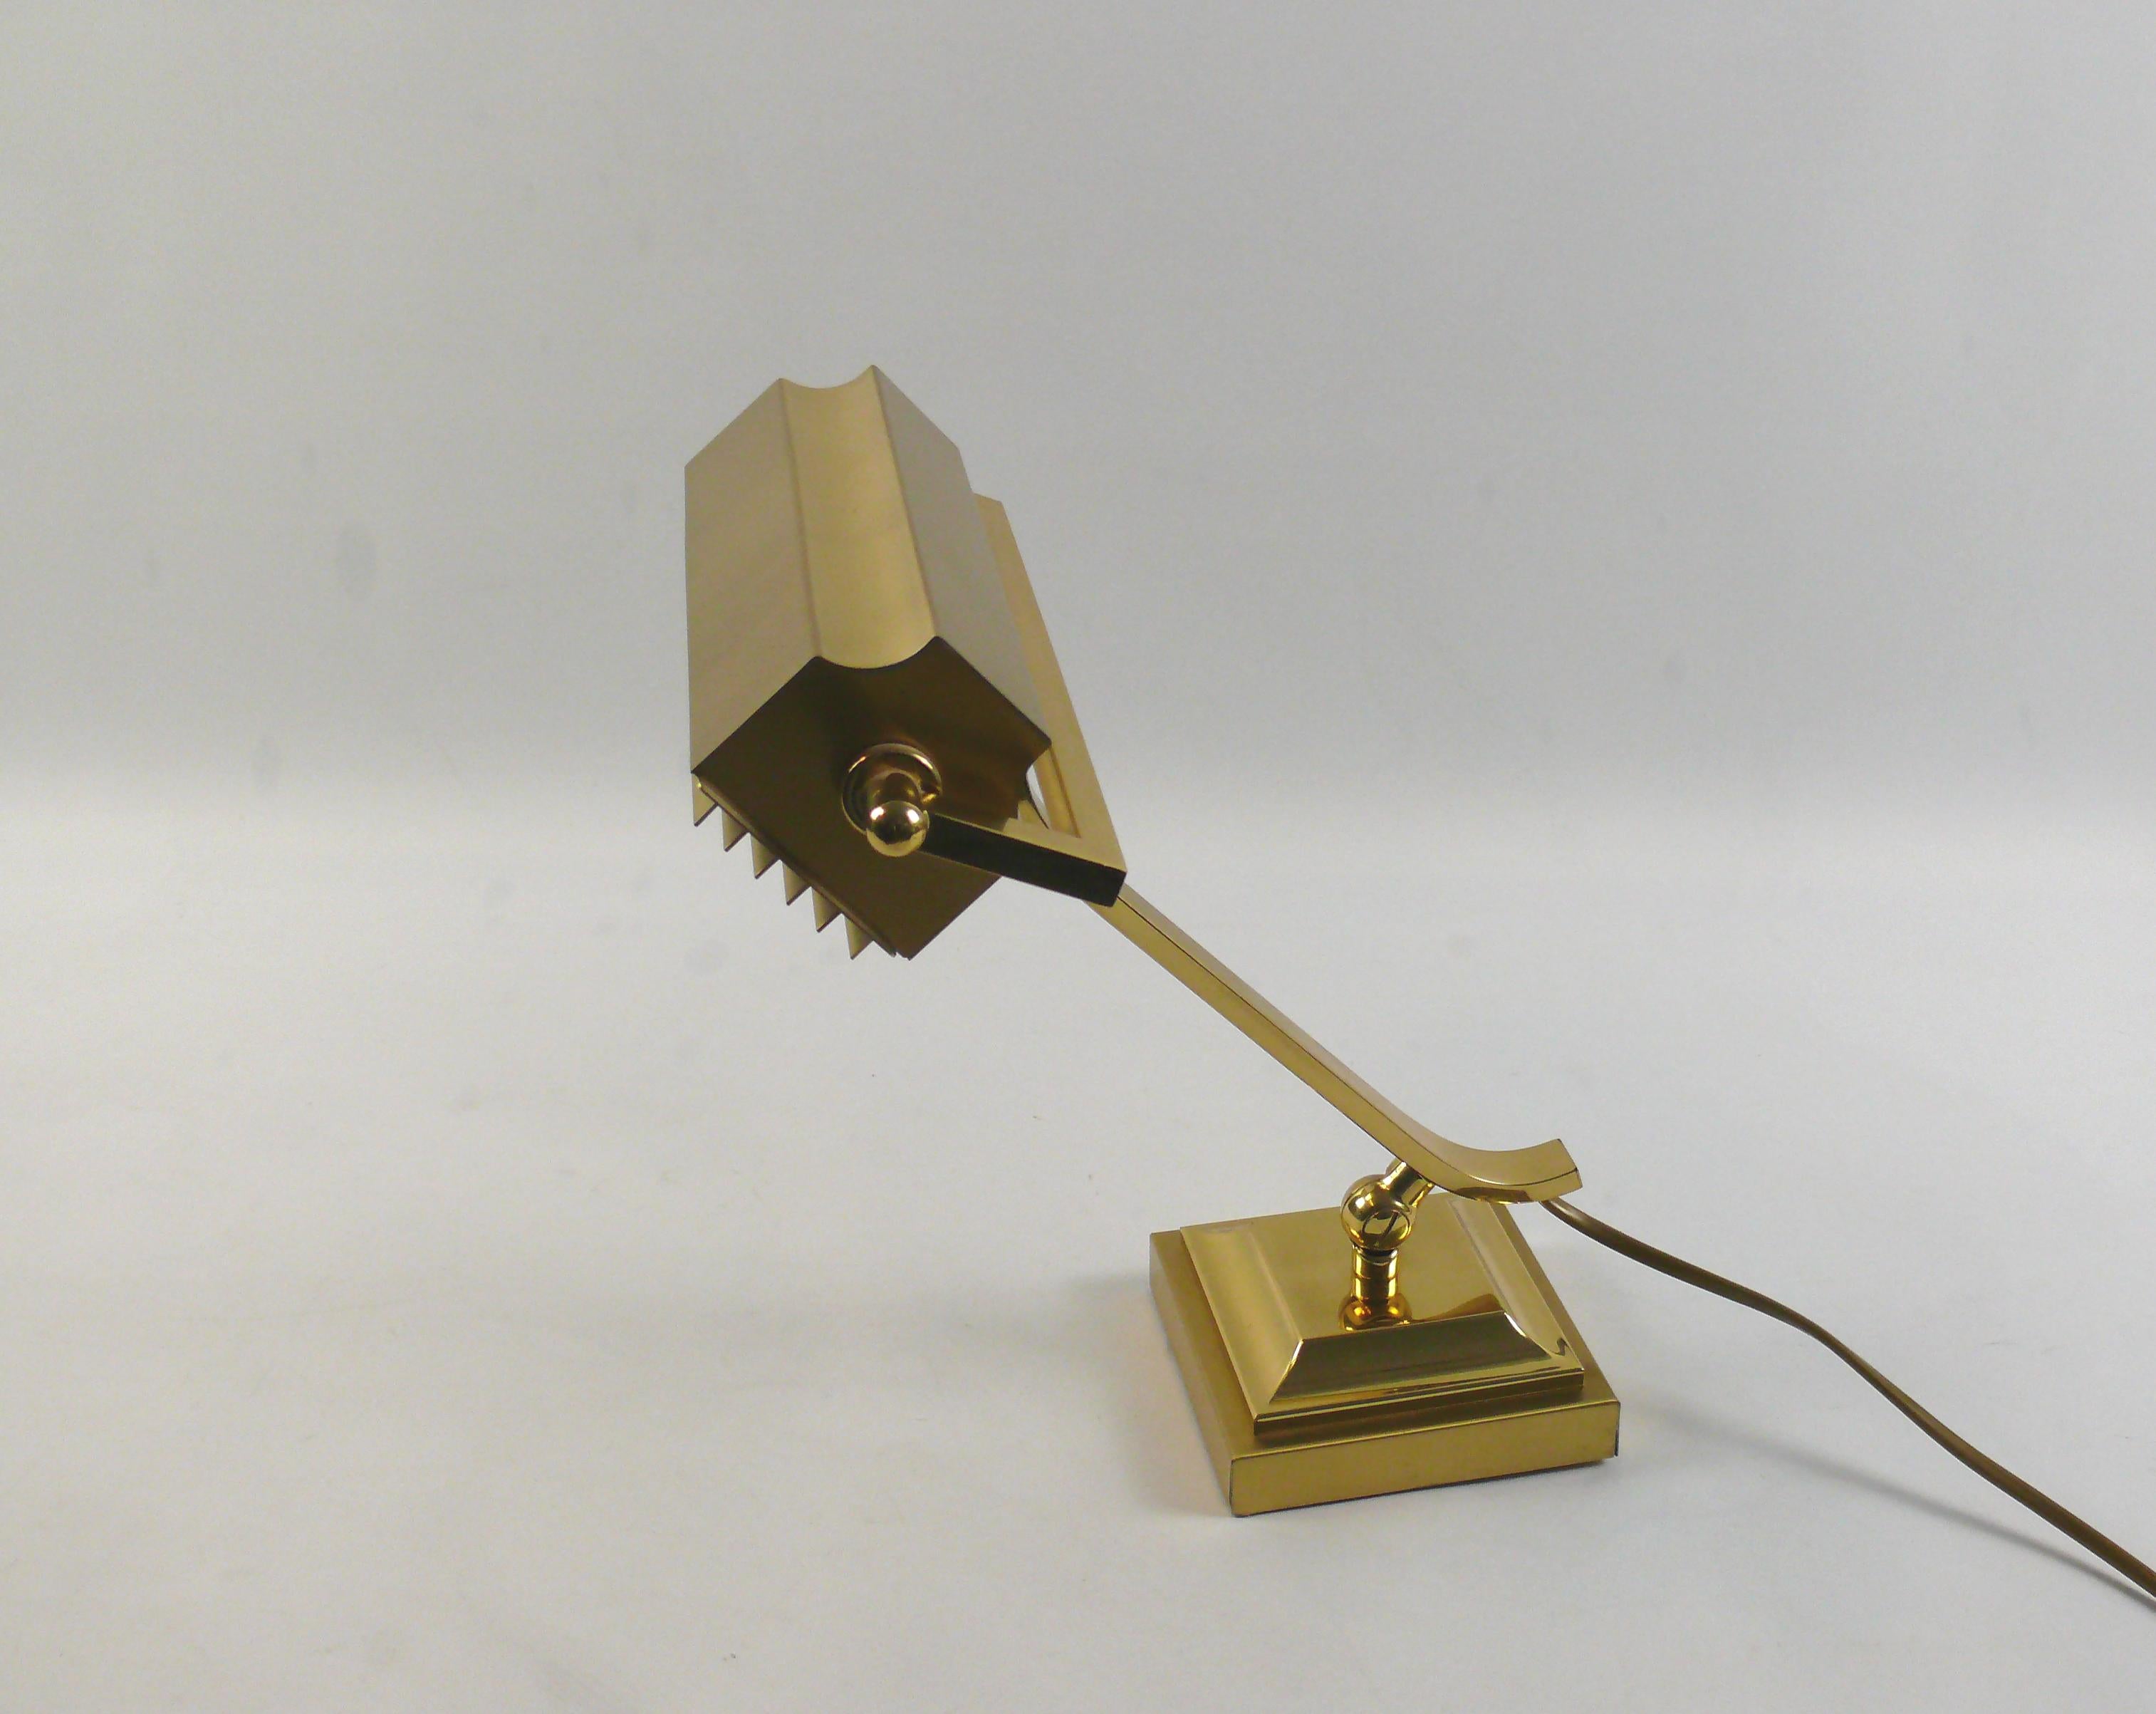 Rare, très solide et lourde lampe de piano en laiton, circa 1960 - 1970 avec protection anti-éblouissement amovible. La lampe est en laiton brillant et ne présente pratiquement aucun signe de vieillissement sur la surface du laiton. Le parapluie et